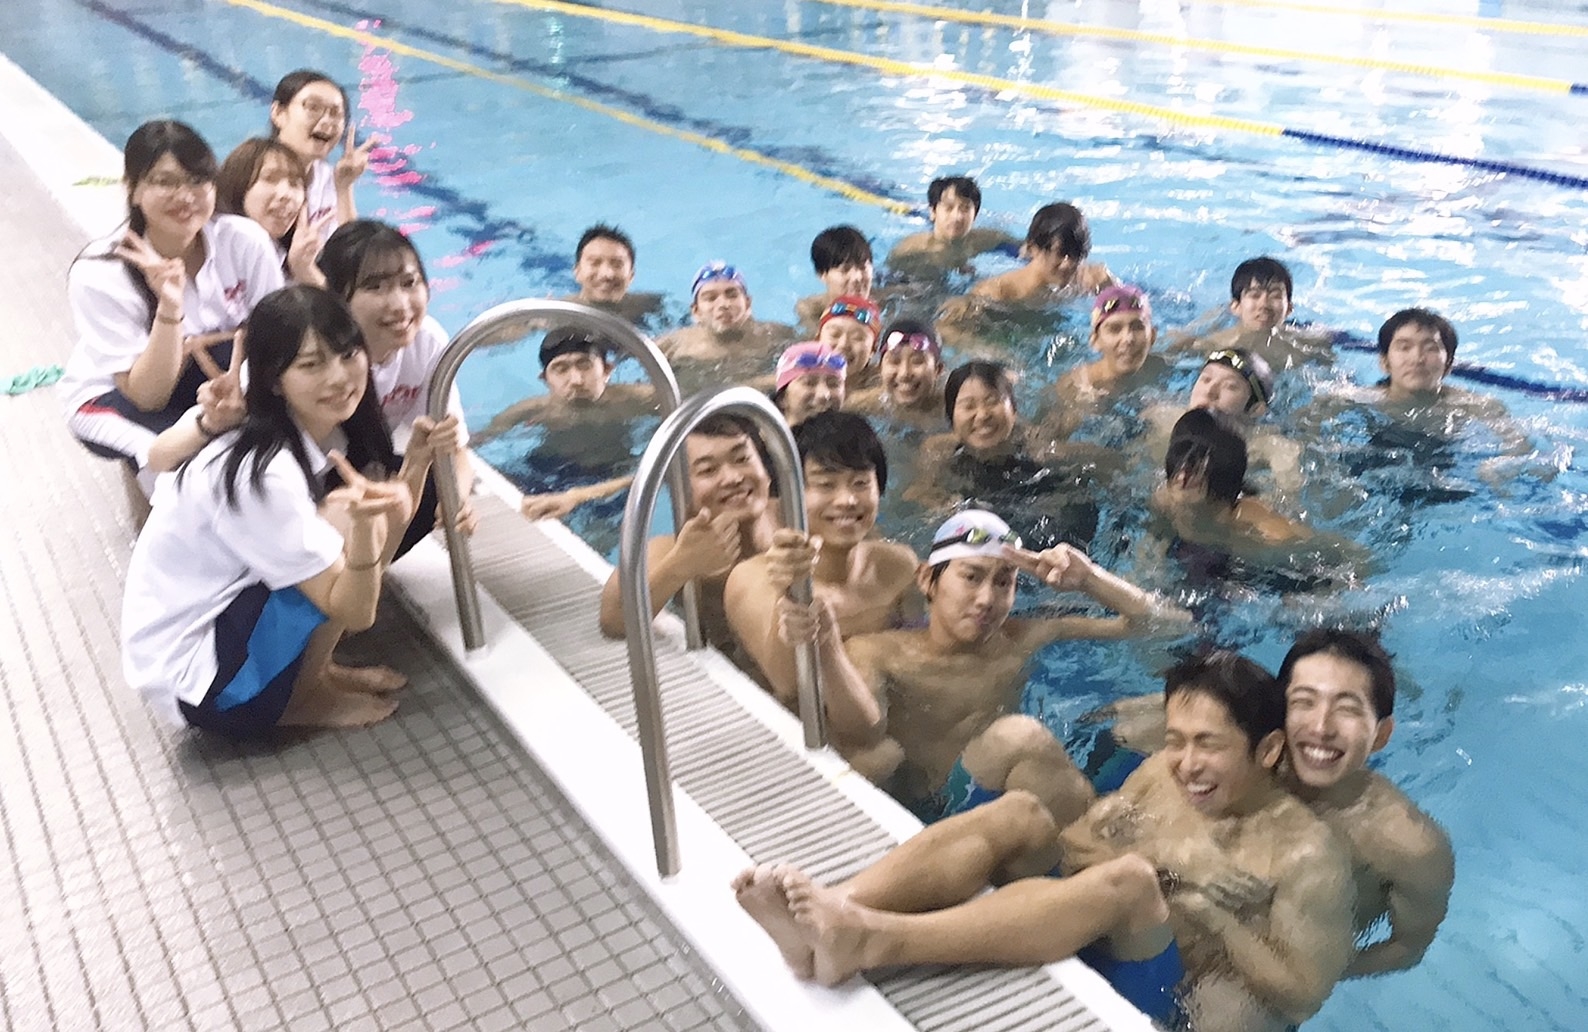 【課外活動団体紹介】体育会水泳部競泳班 